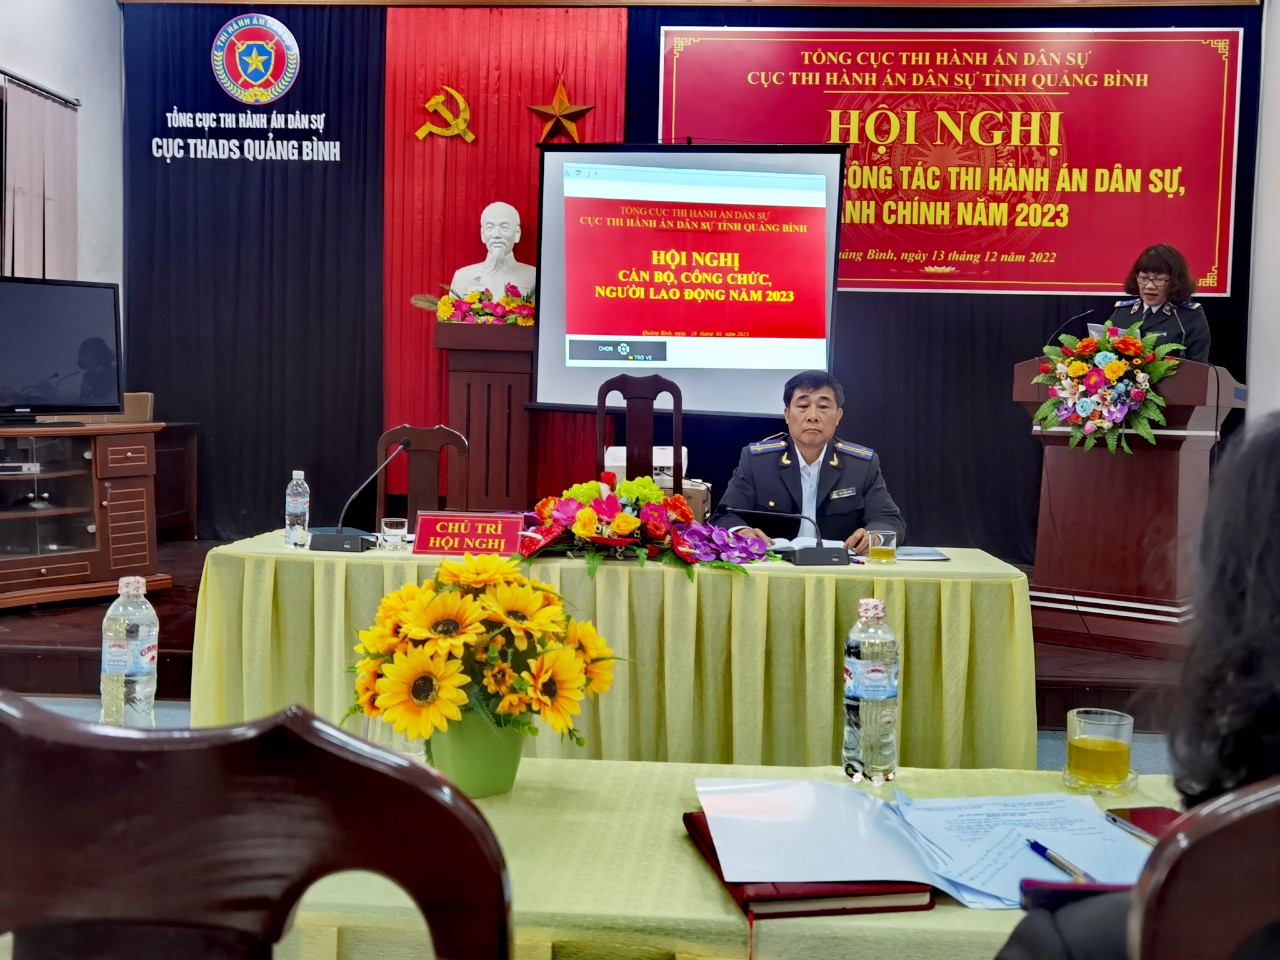 Cục THADS tỉnh Quảng Bình tổ chức Hội nghị cán bộ, công chức năm 2023